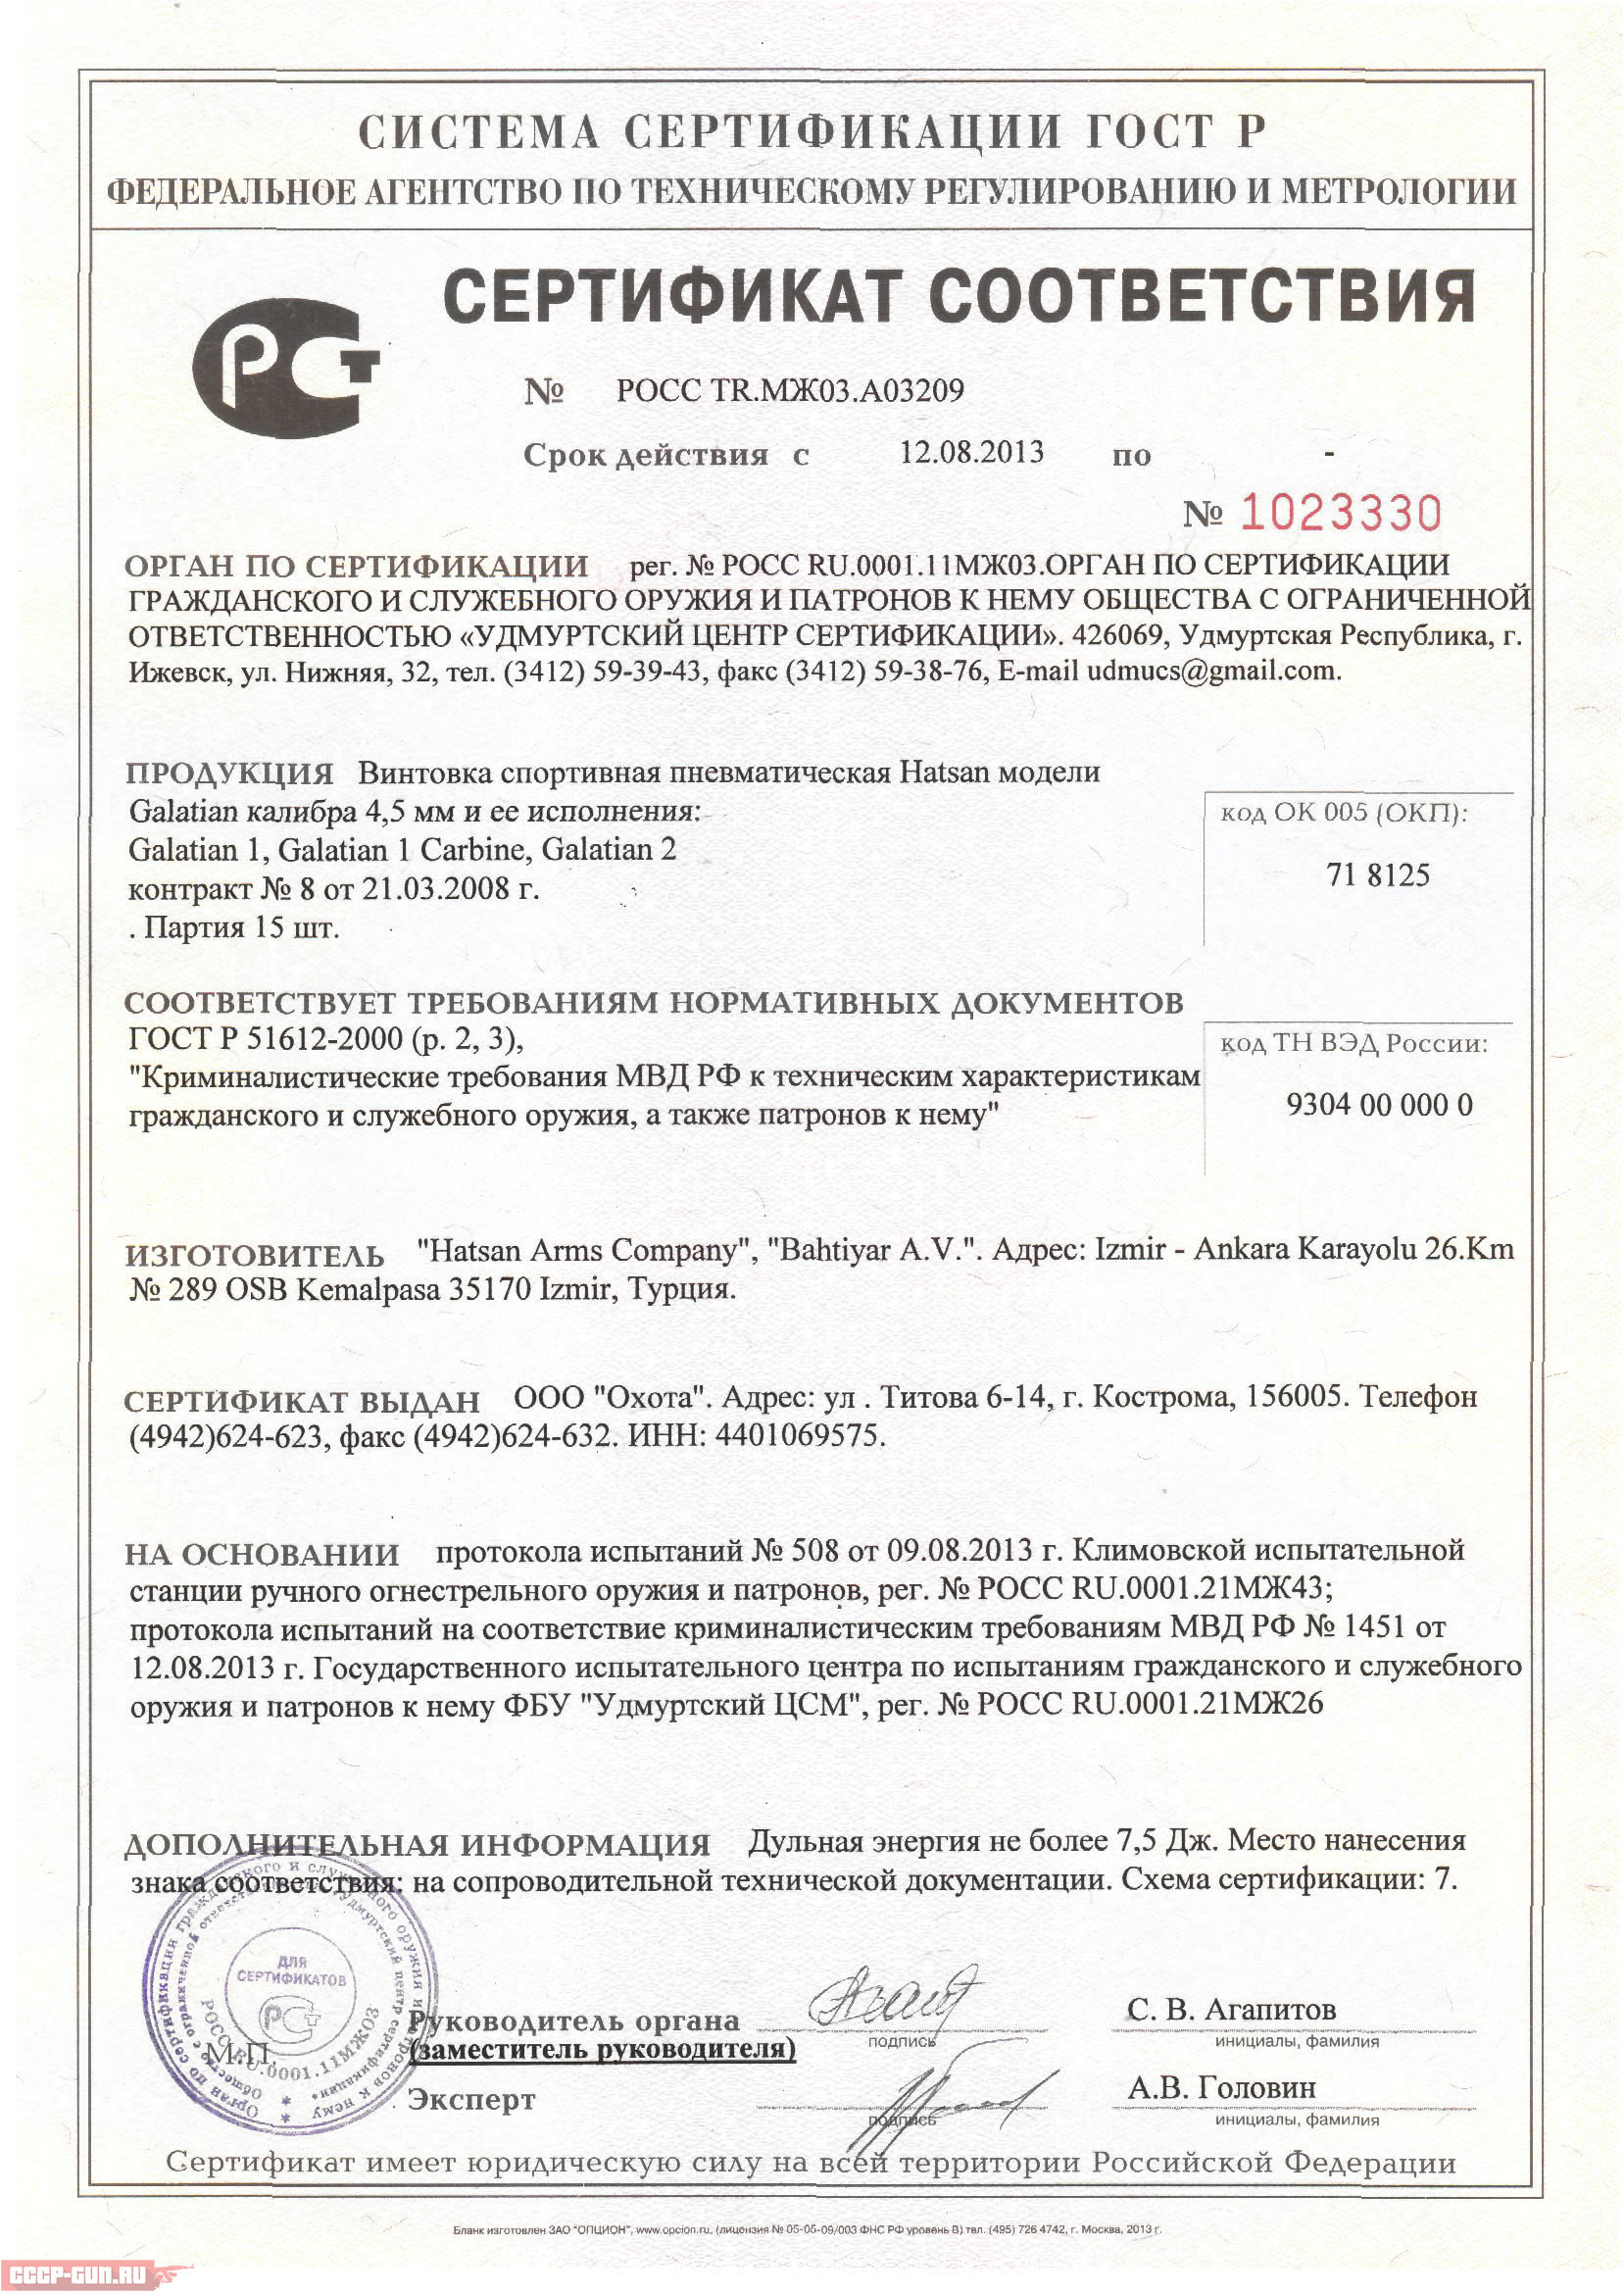 Сертификат на пневматическую винтовку Hatsan Galatian 1 Carbine скачать